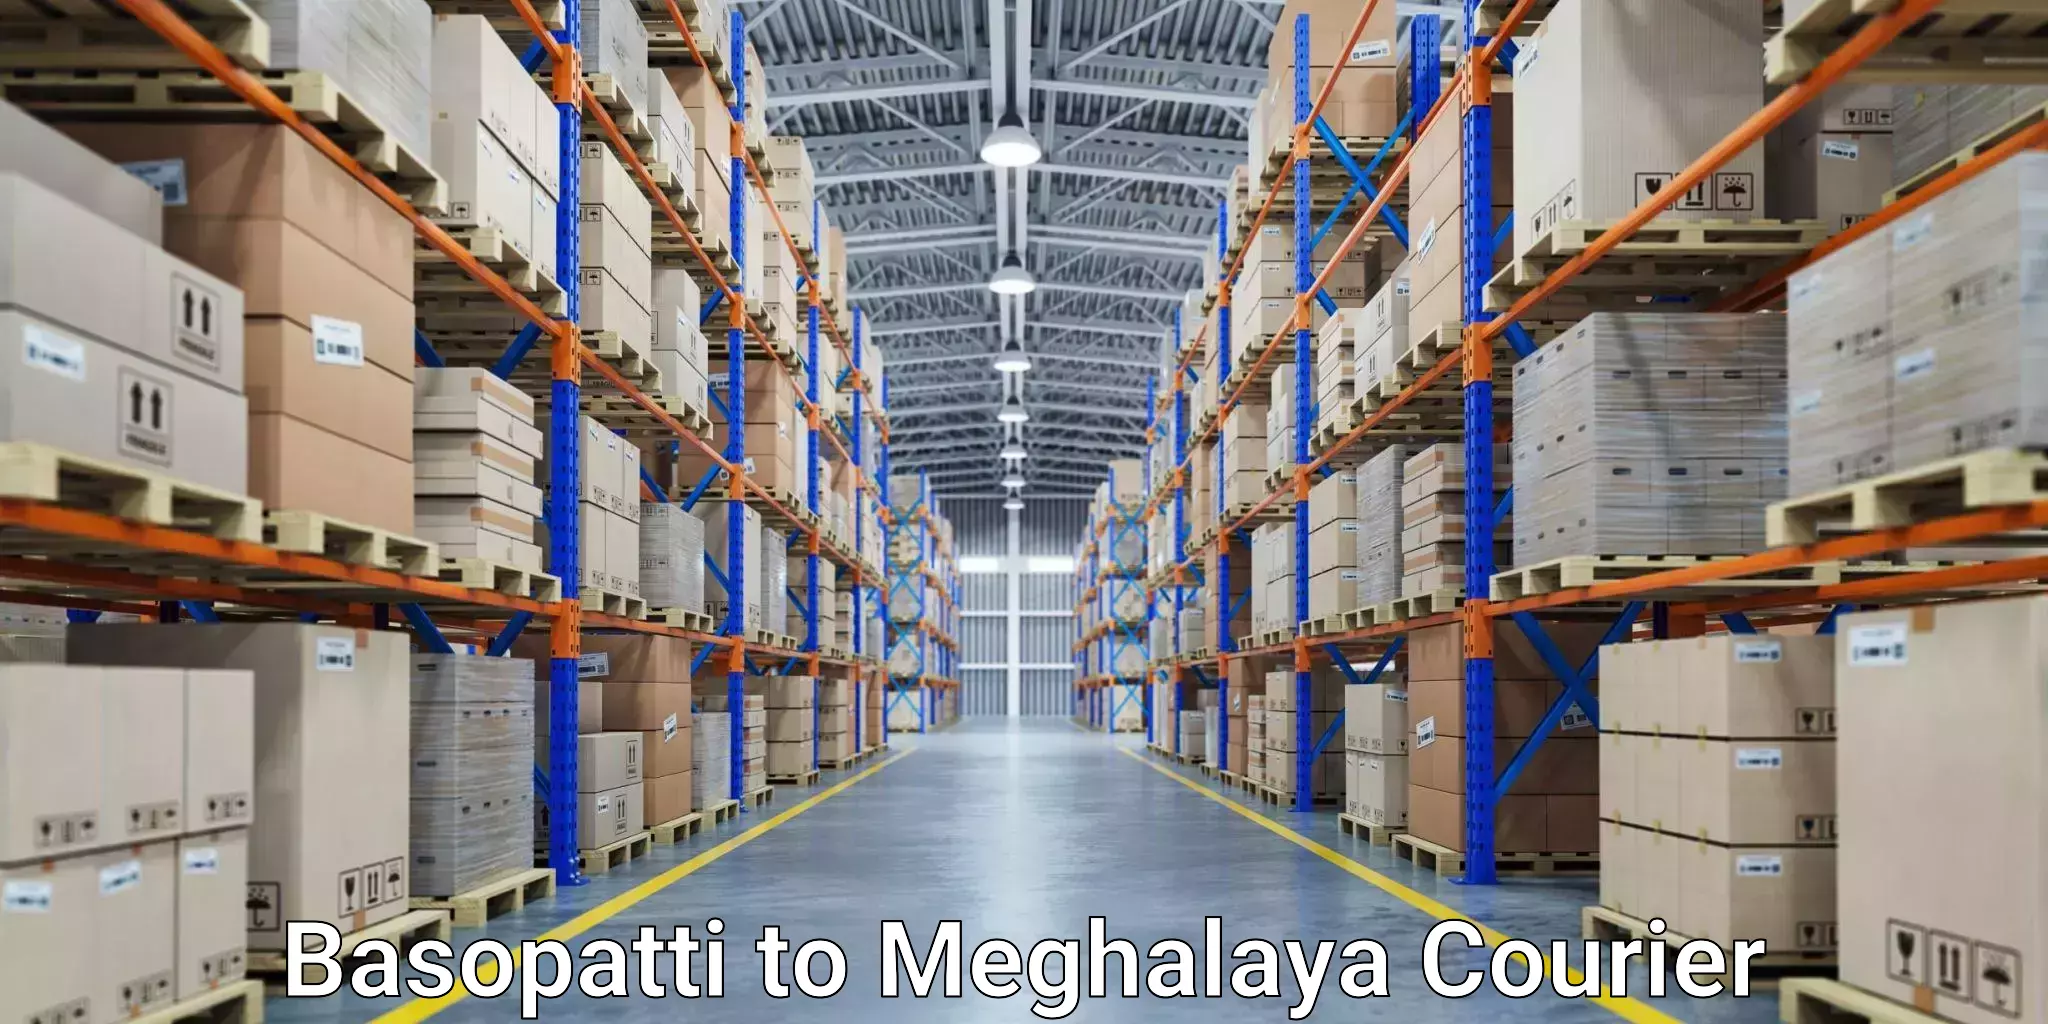 End-to-end delivery Basopatti to Meghalaya